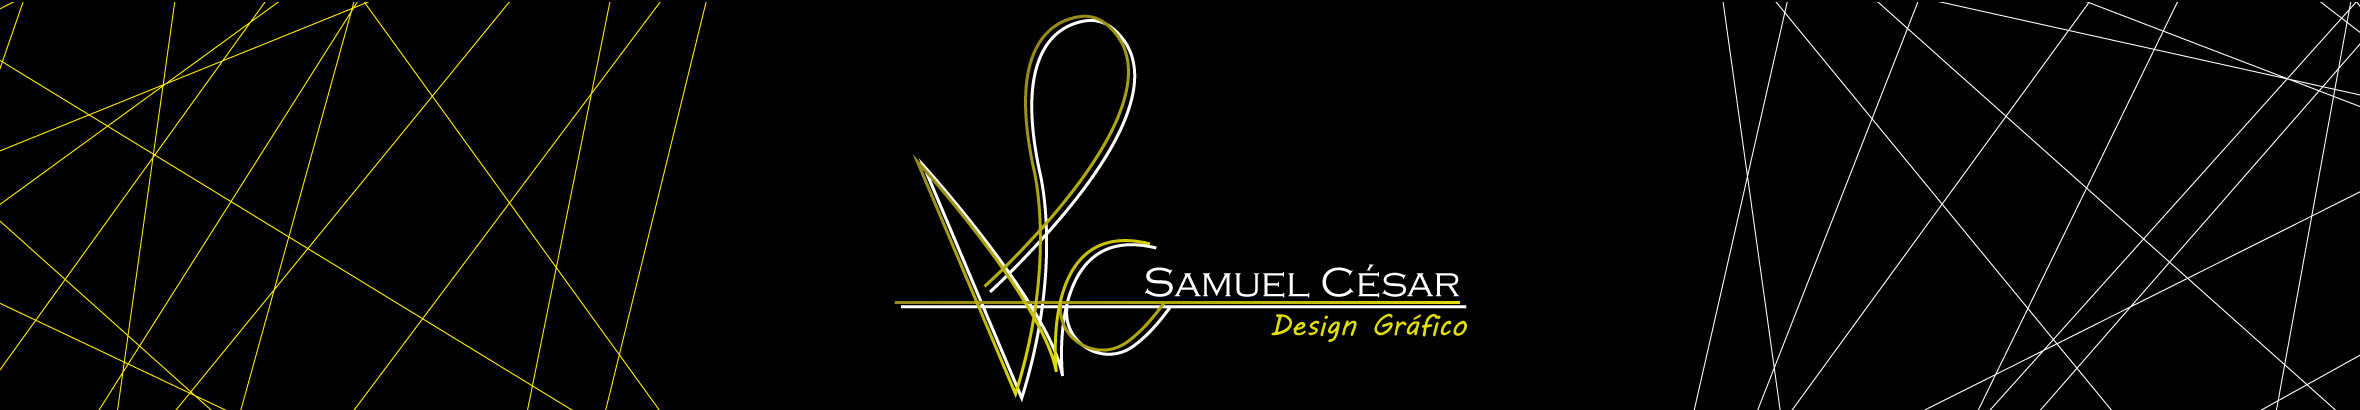 Samuel César's profile banner